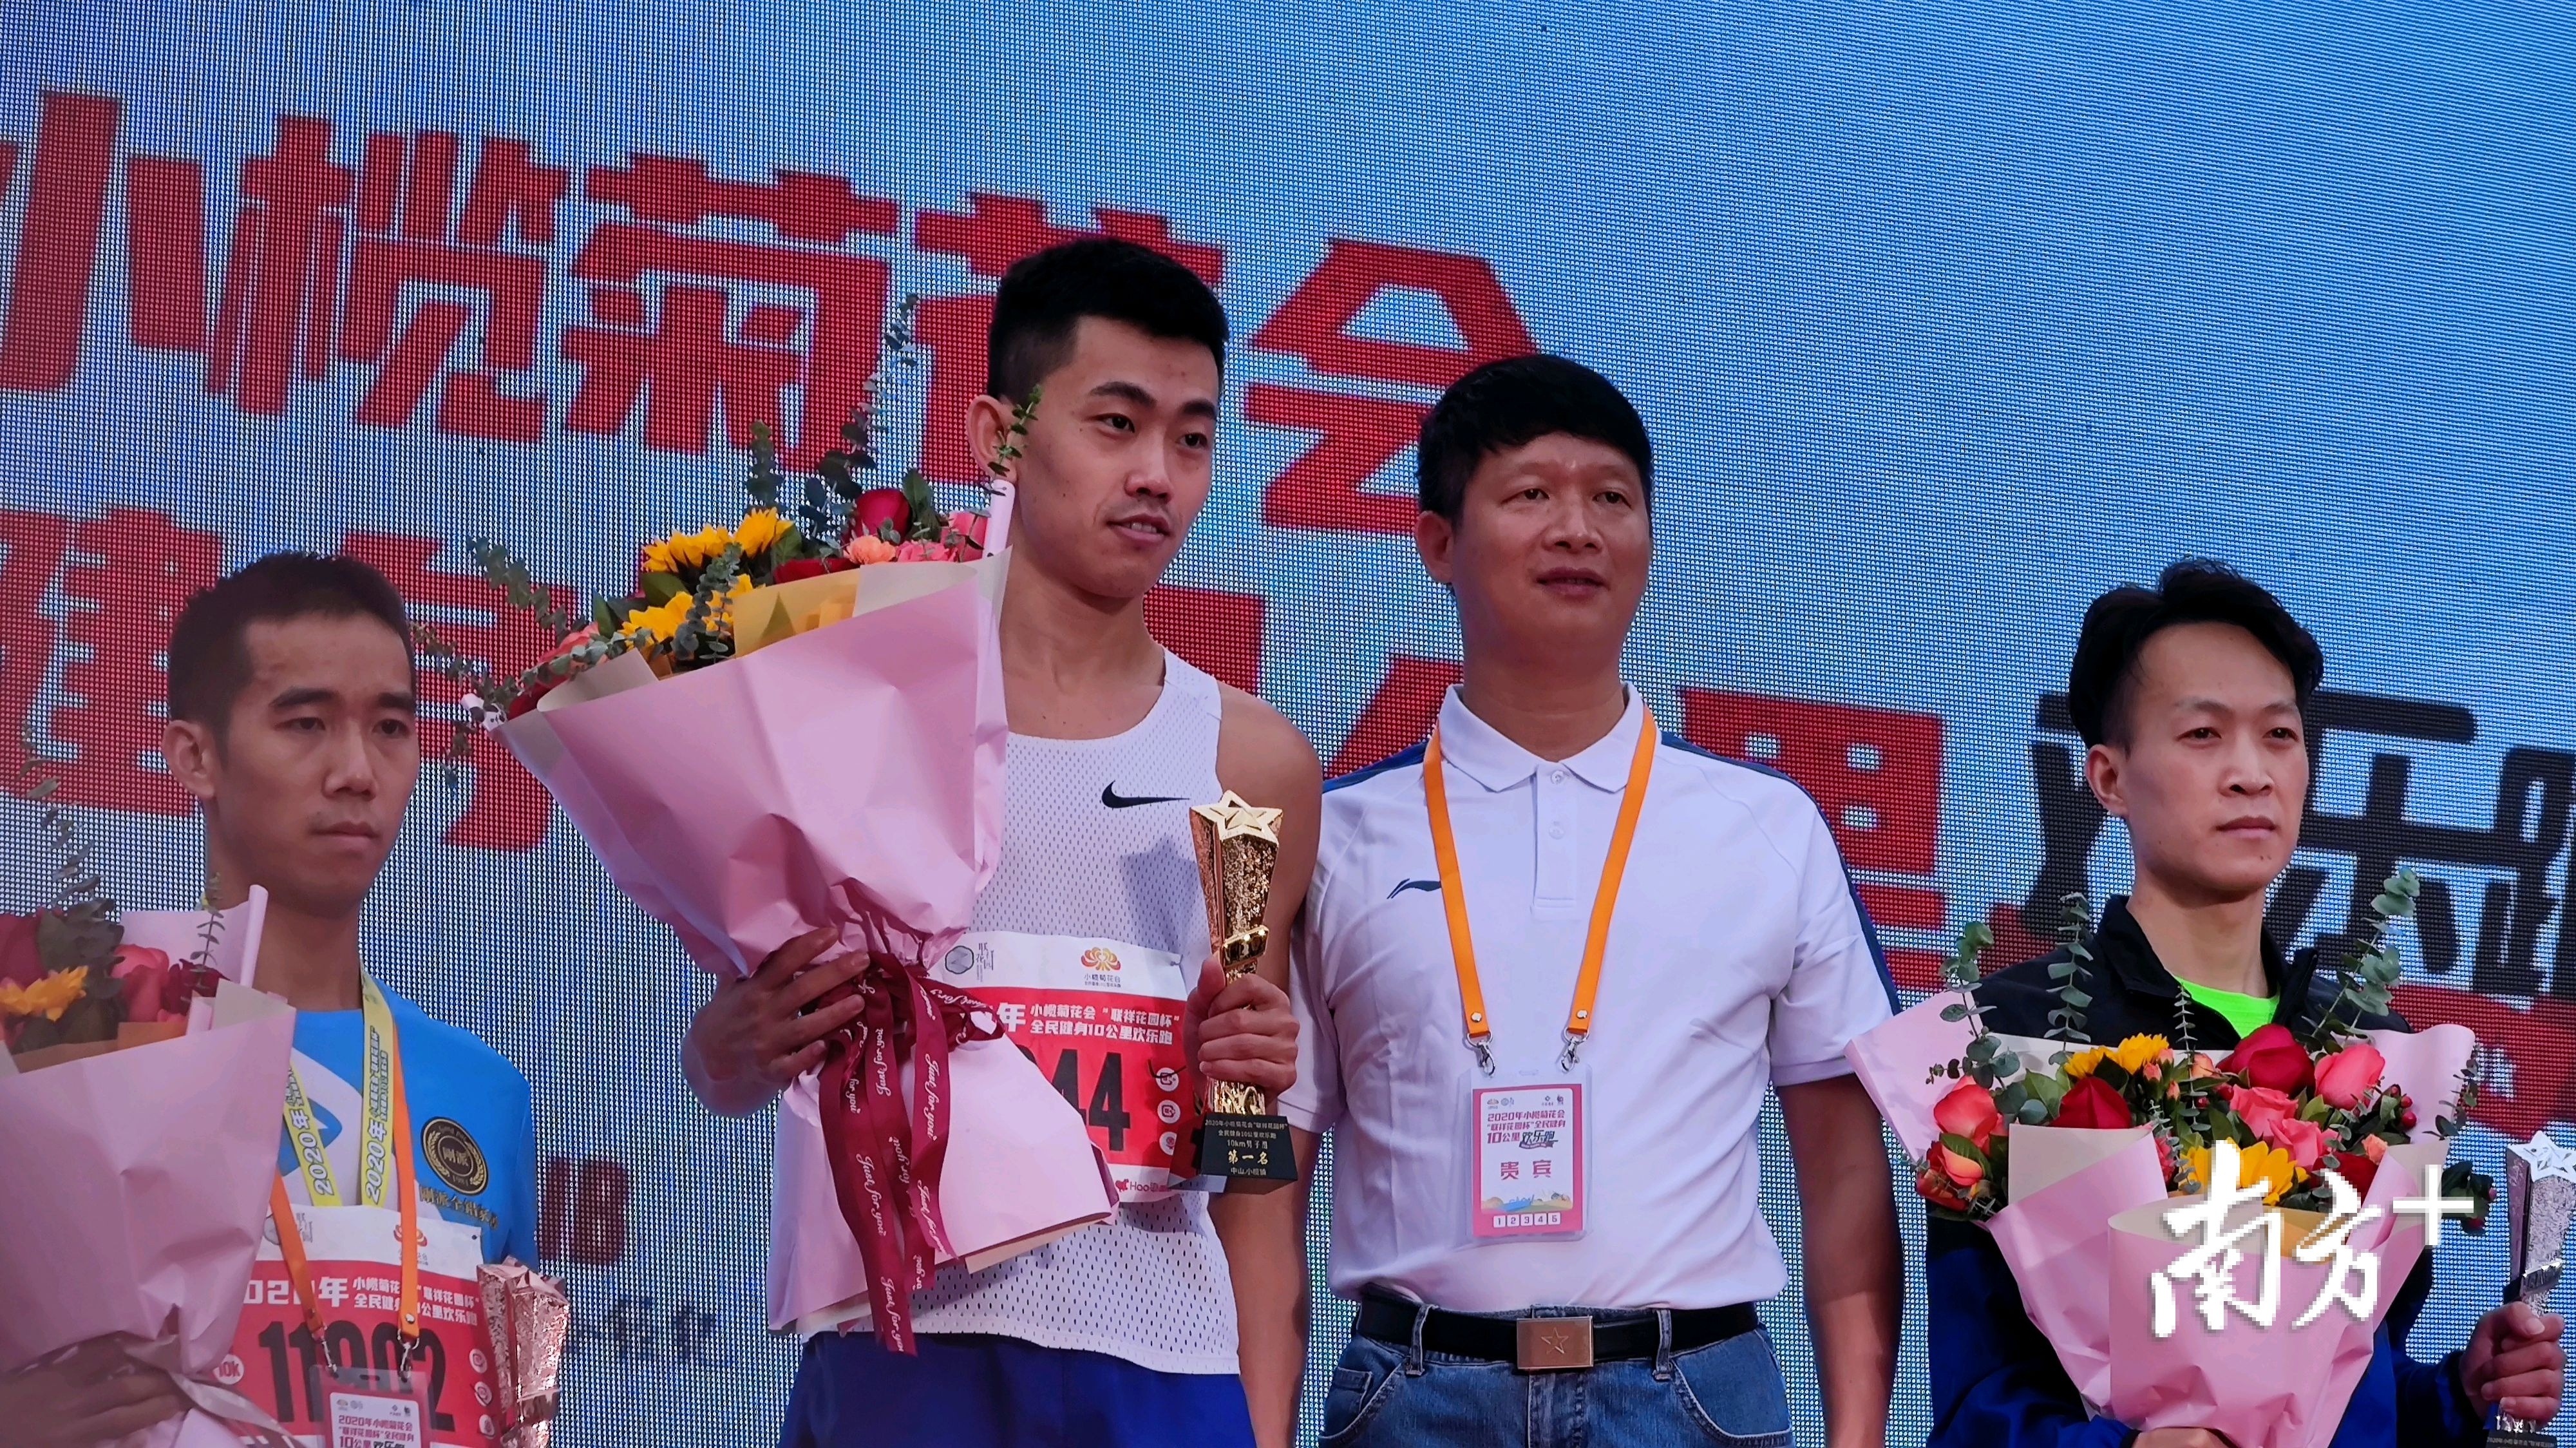 小榄镇党委书记黄伟东为10公里男子组冠军颁奖。